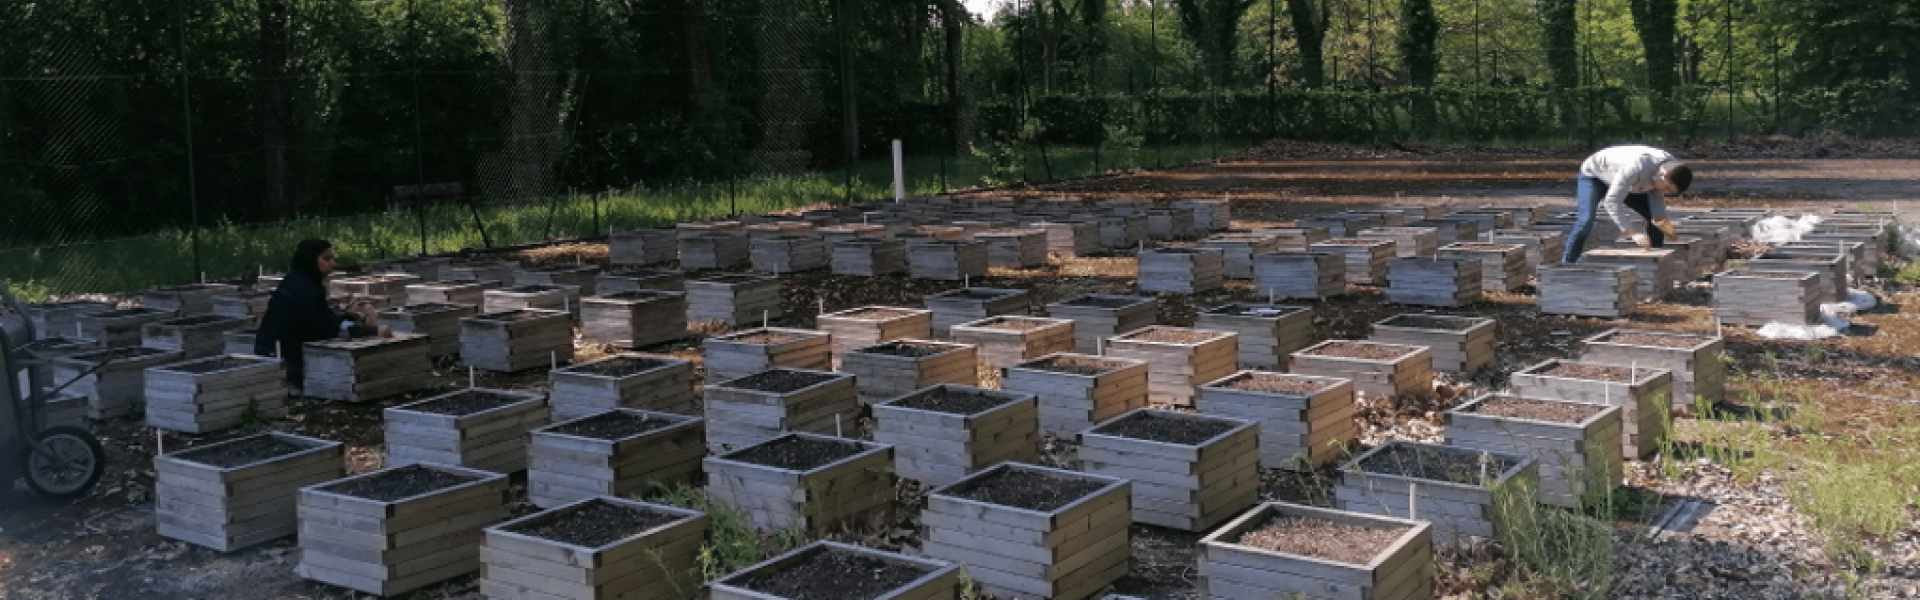 Libération - Ruches sur les toits : en ville, les abeilles filent